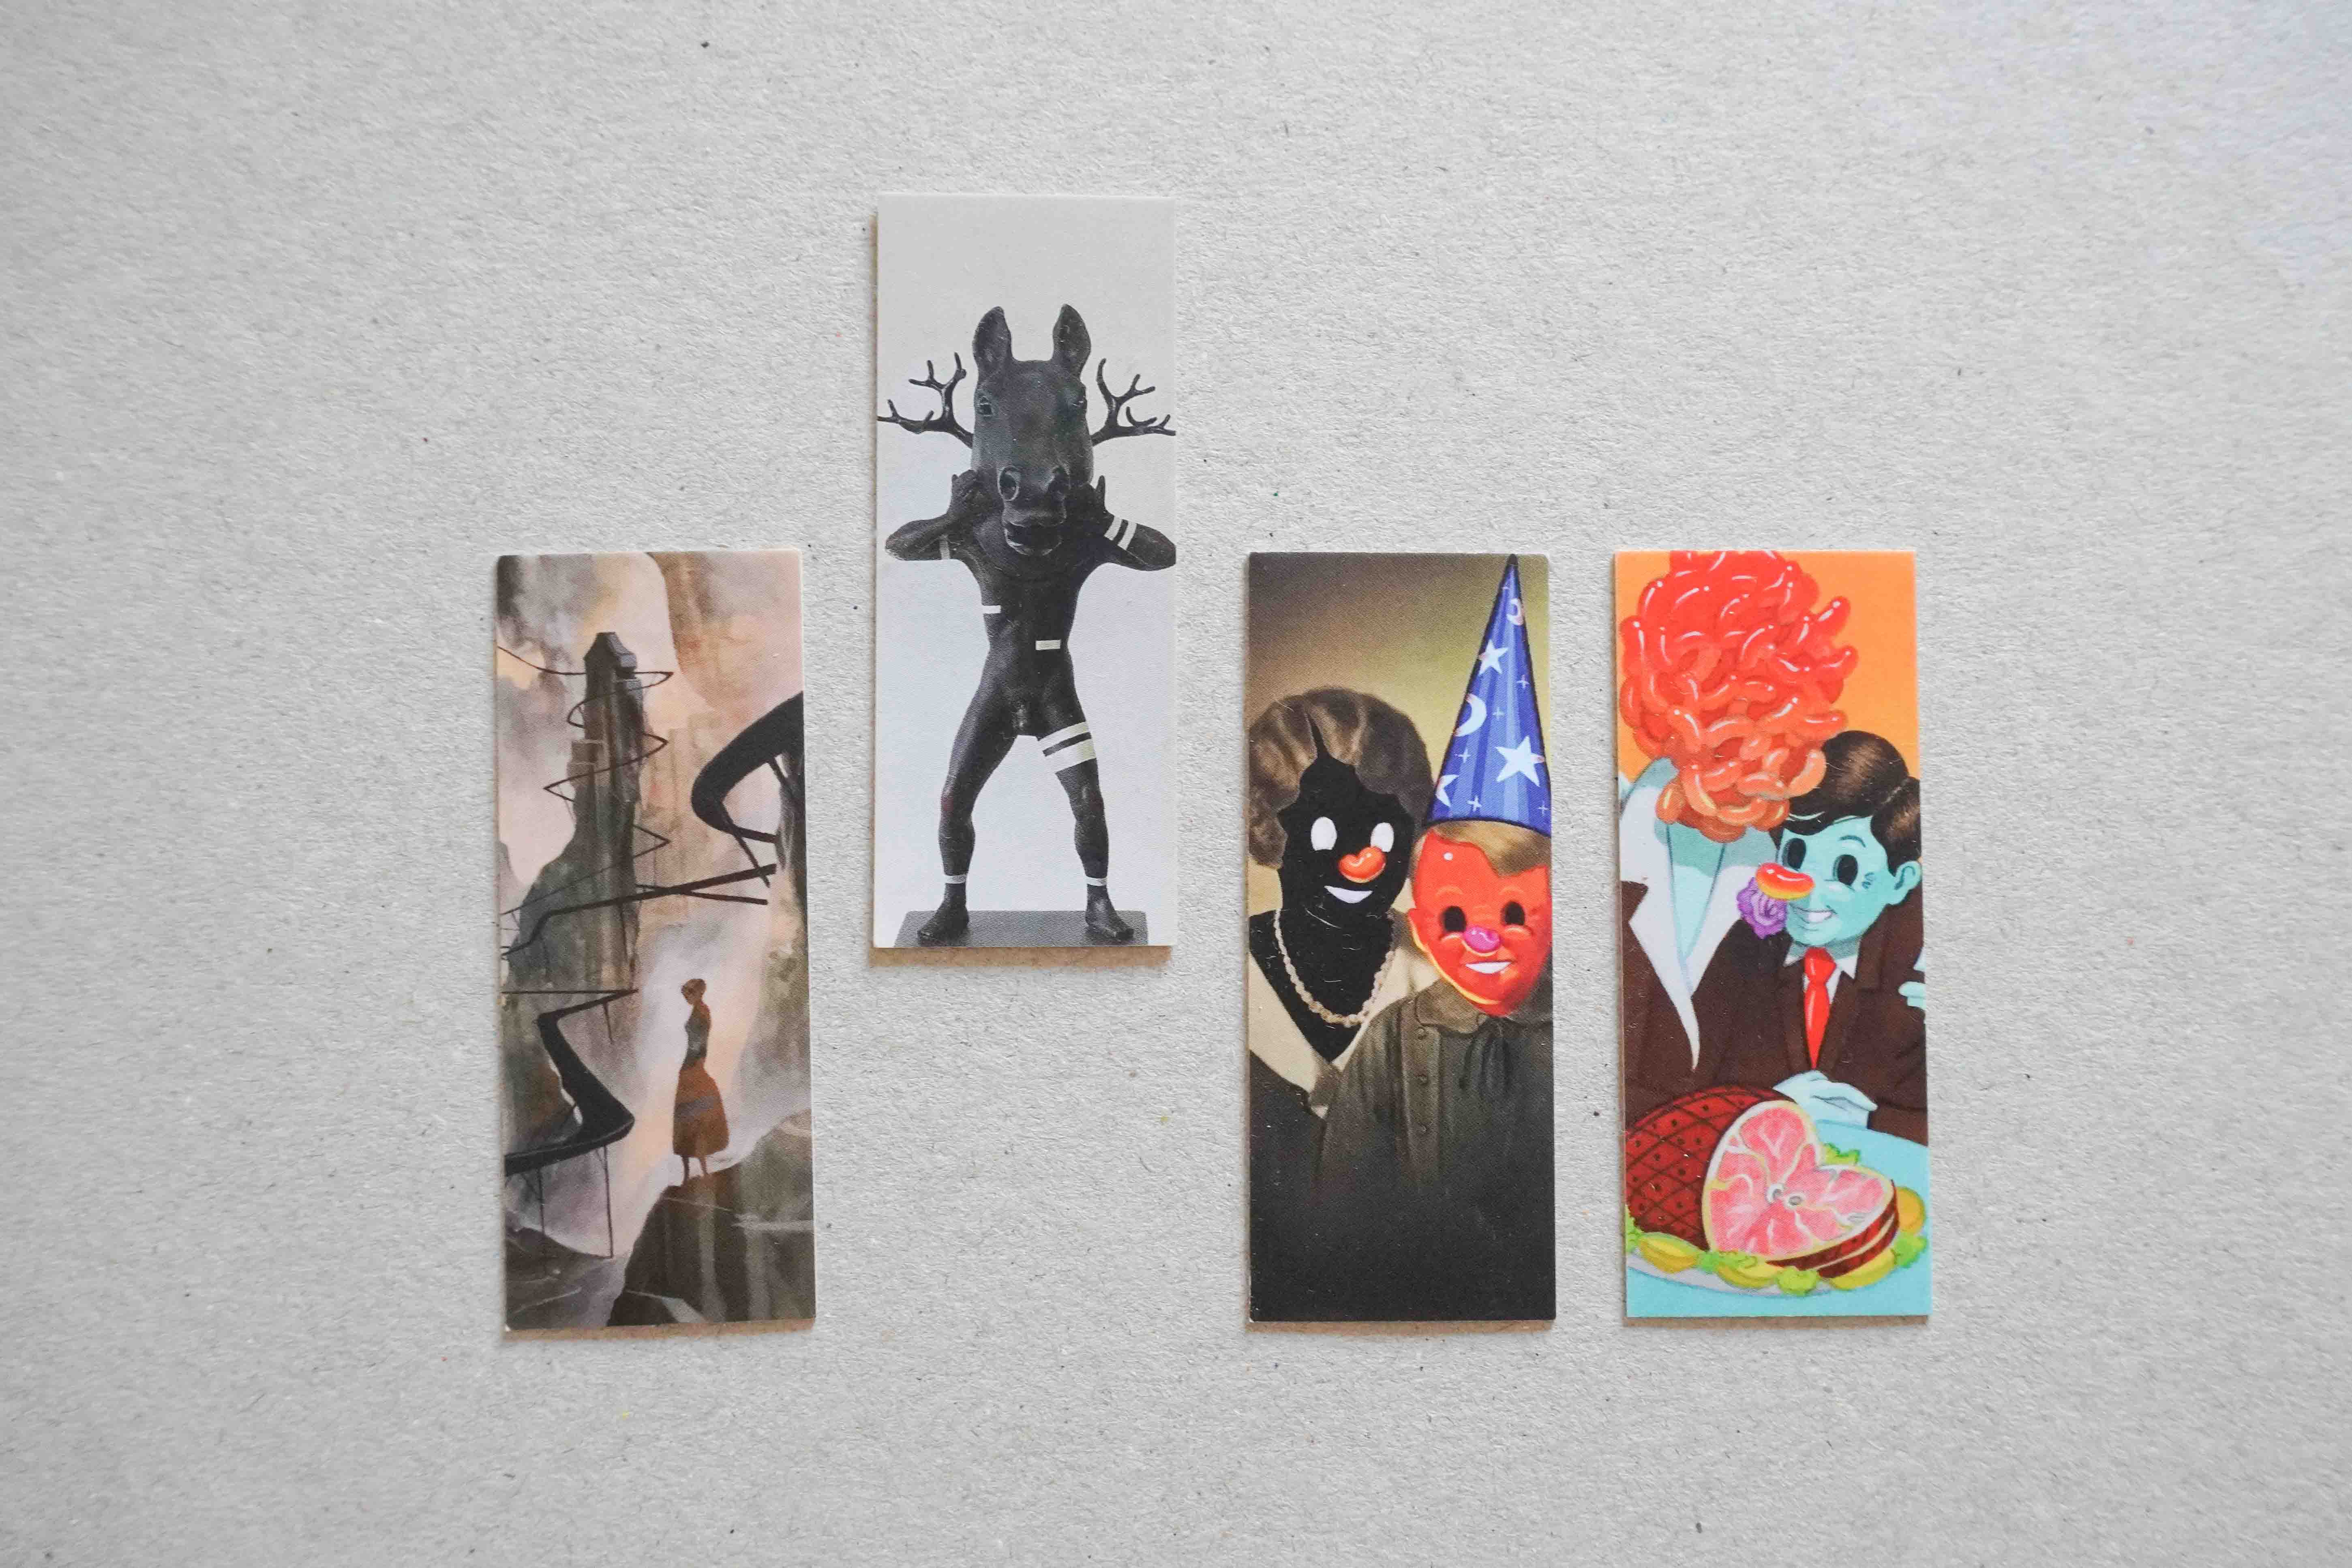 Fousion Gallery – Business Cards – Will Barras, Mono Cieza, Victor Castillo